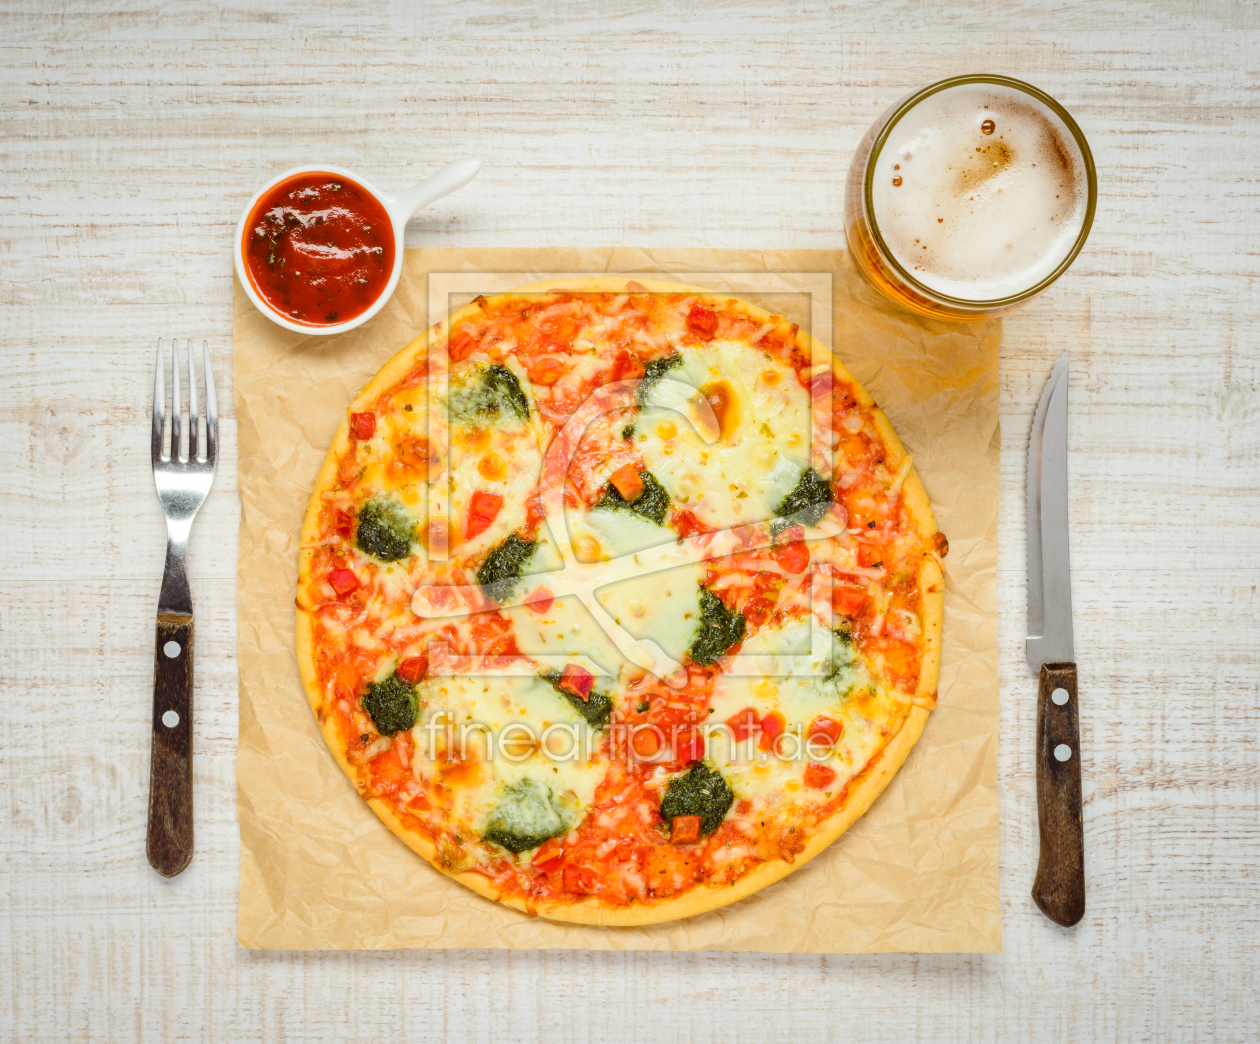 Bild-Nr.: 11826167 Pizza mit Soße und Glass Bier erstellt von xfotostudio